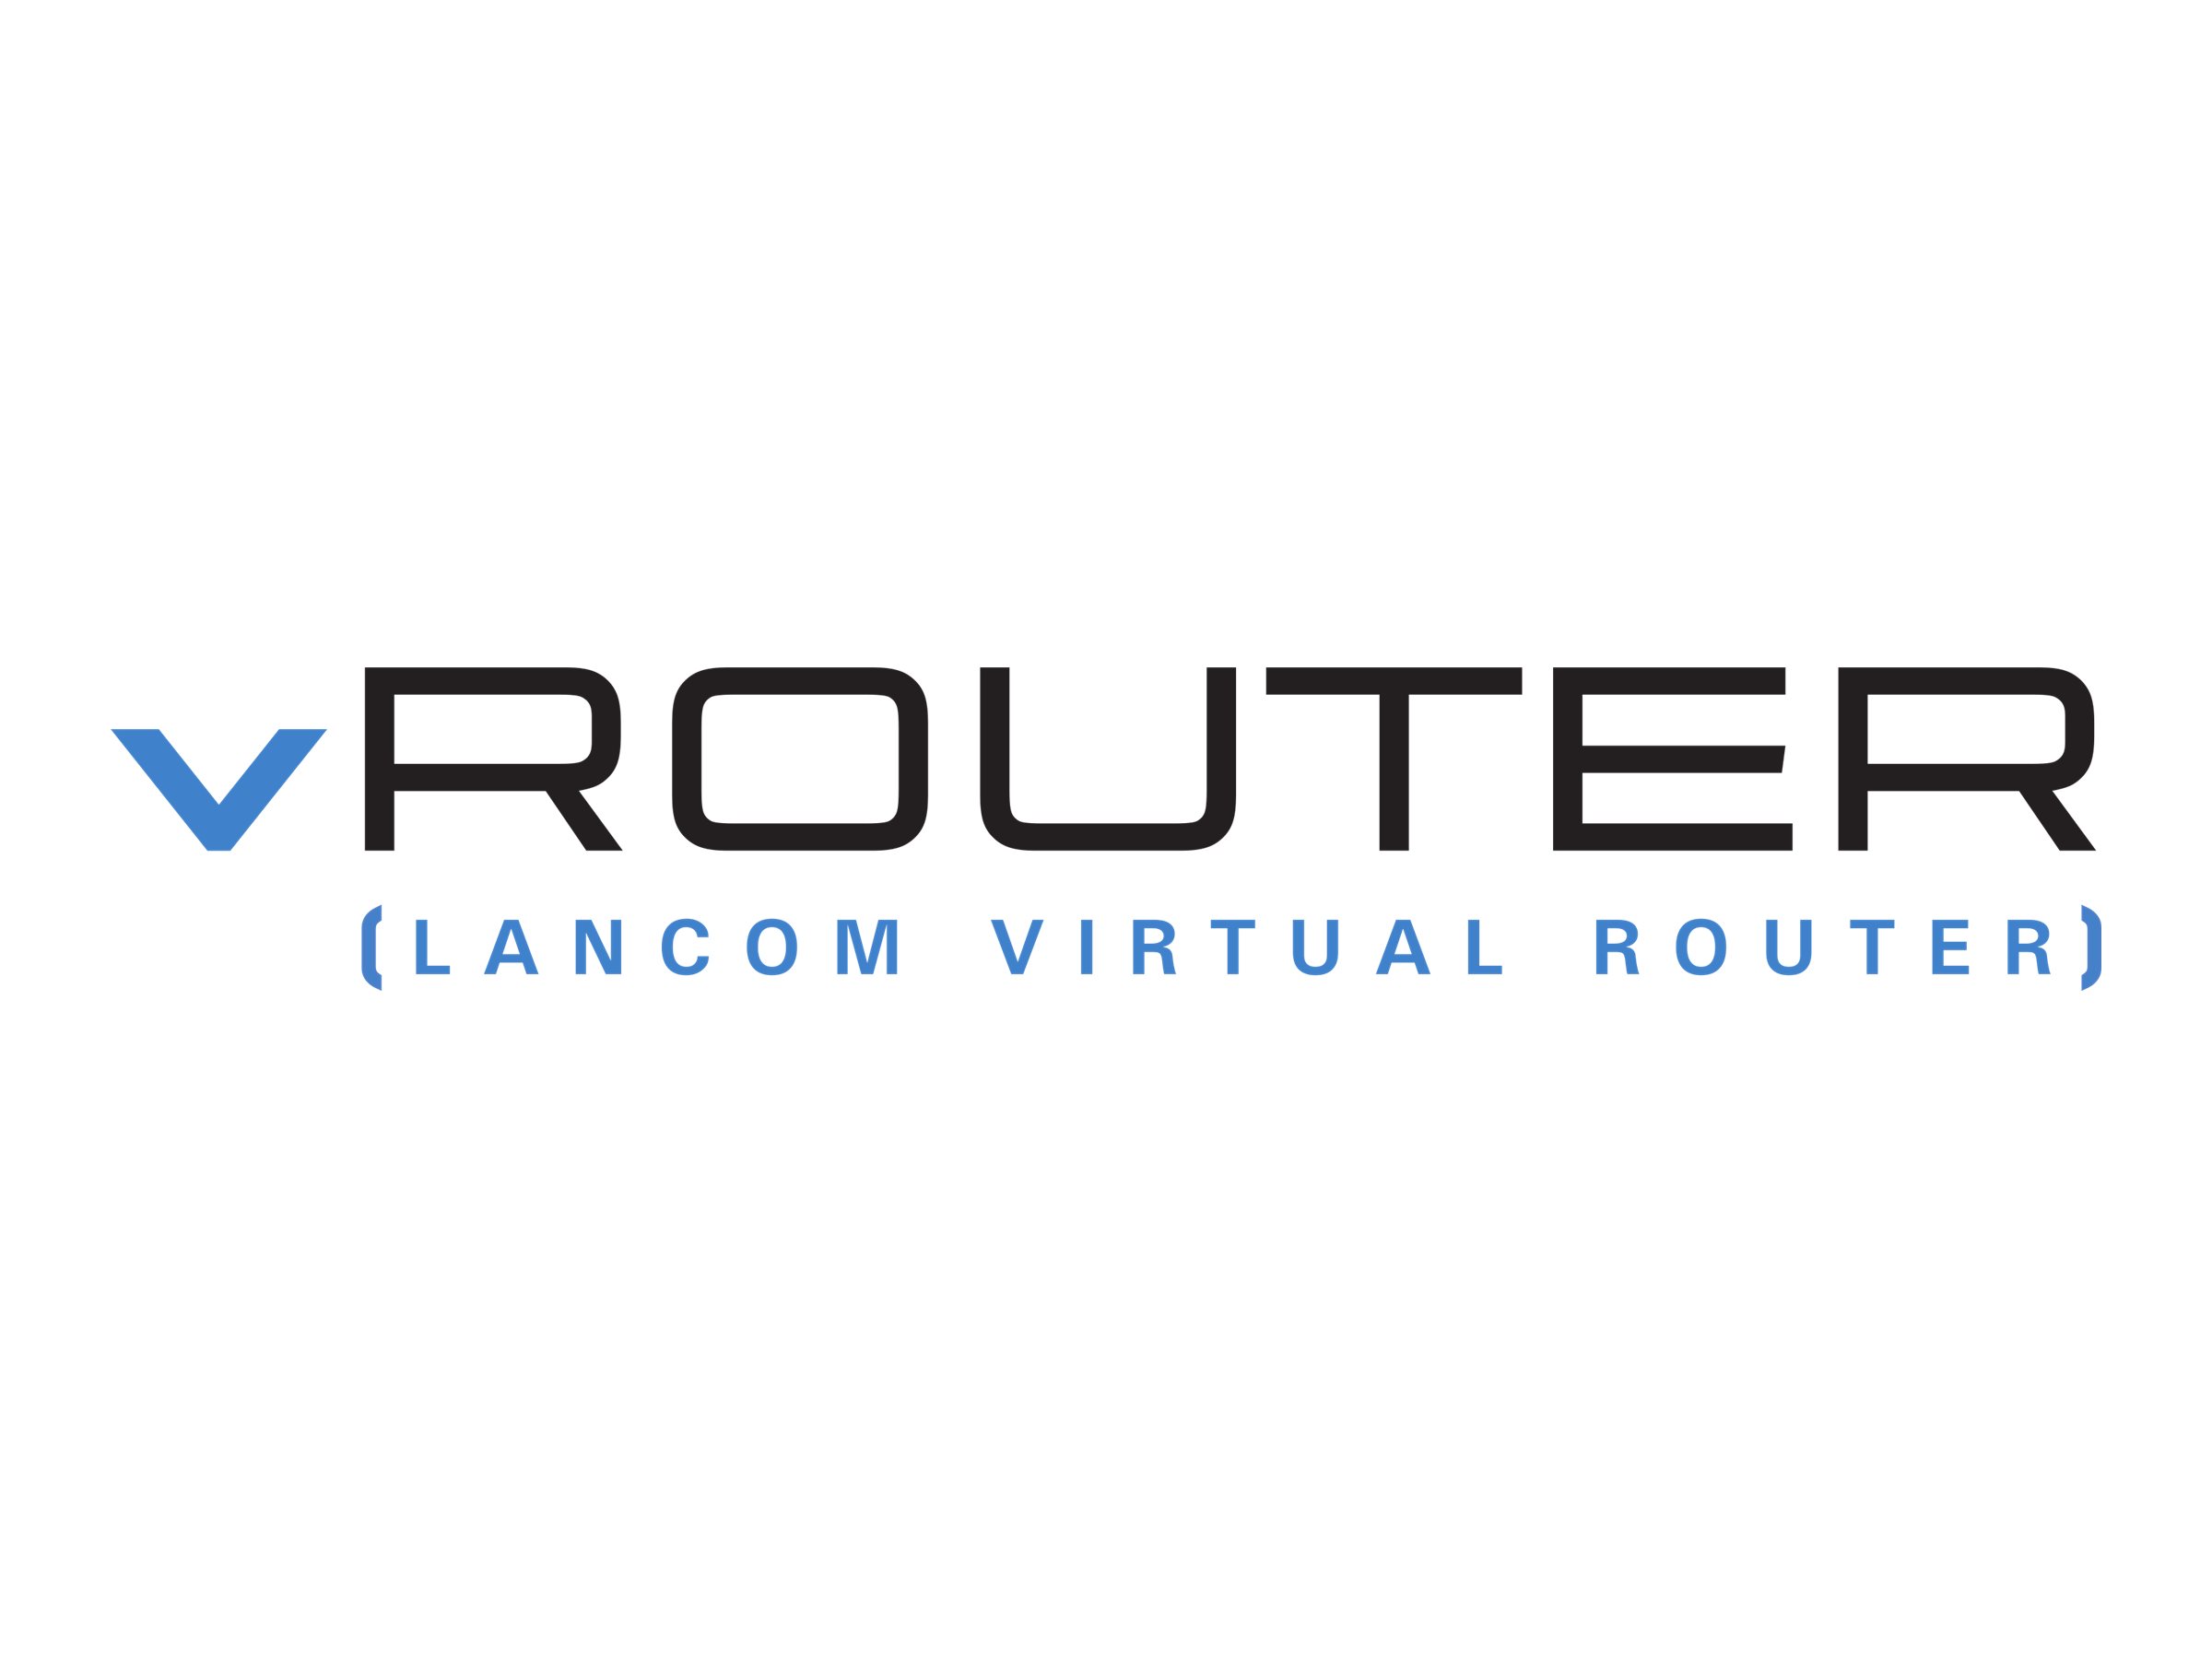 LANCOM vRouter for VMware ESXi - Abonnement-Lizenz (3 Jahre) - 50 Mbit/s Durchsatz, 2 ARF Netzwerke